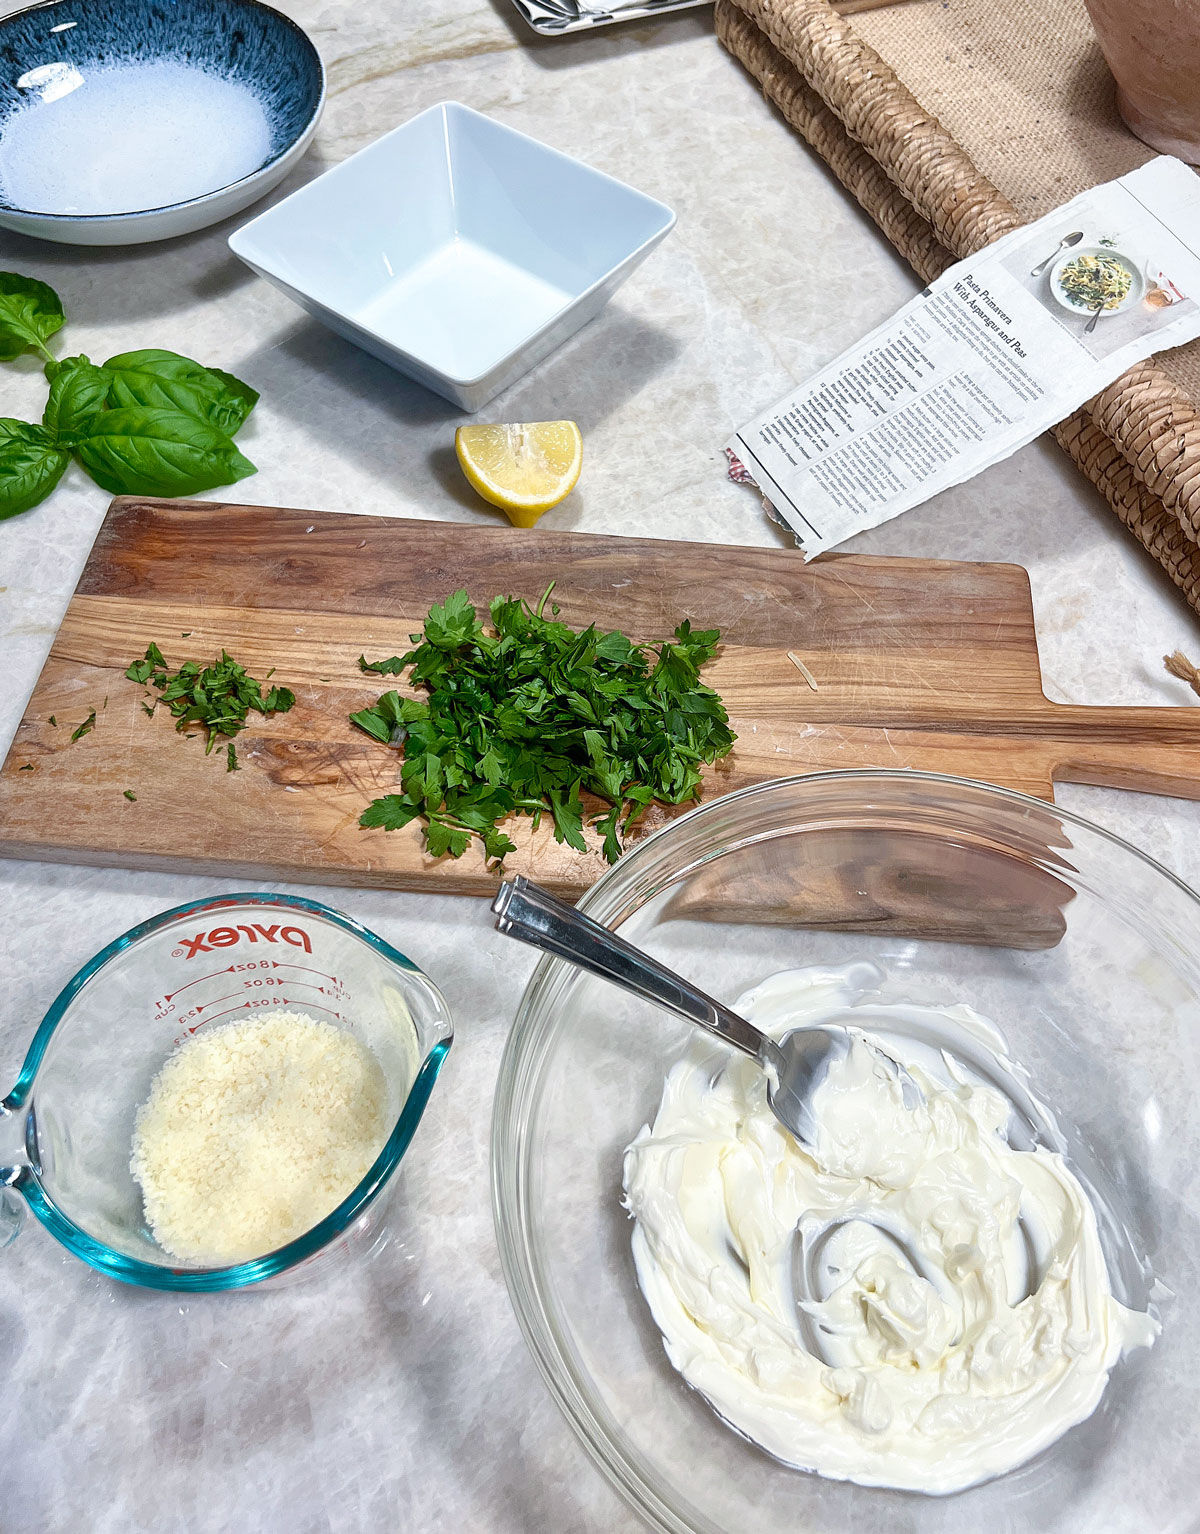 Ingredients for pasta primavera